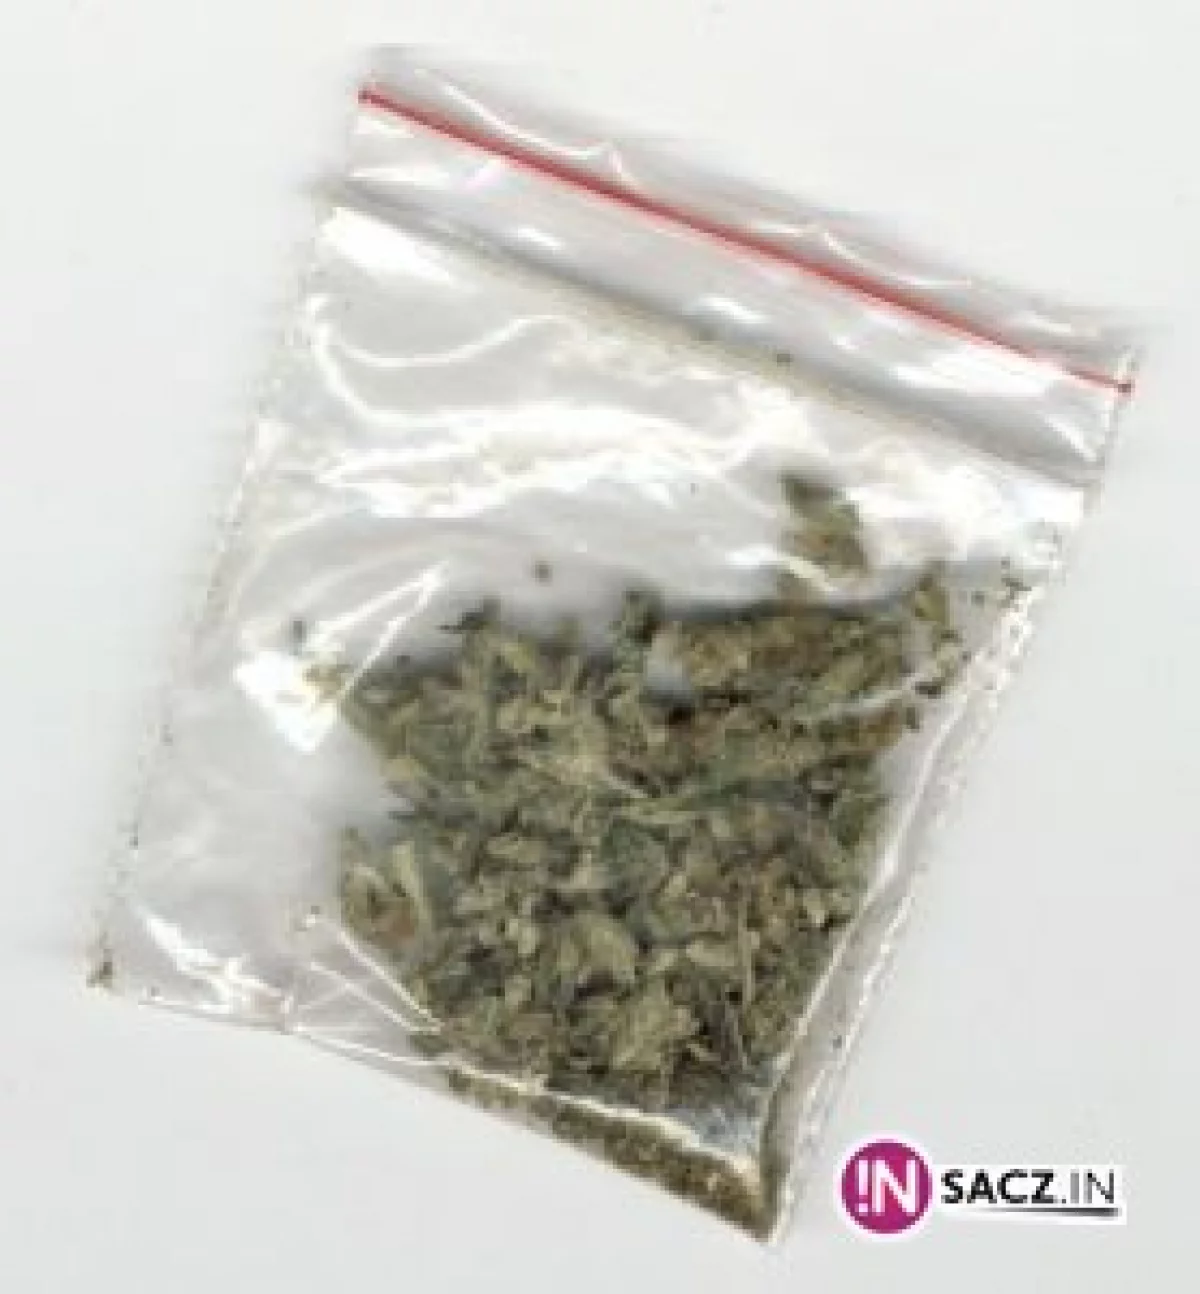 Prawie 100 g marihuany - 5 osób zatrzymanych